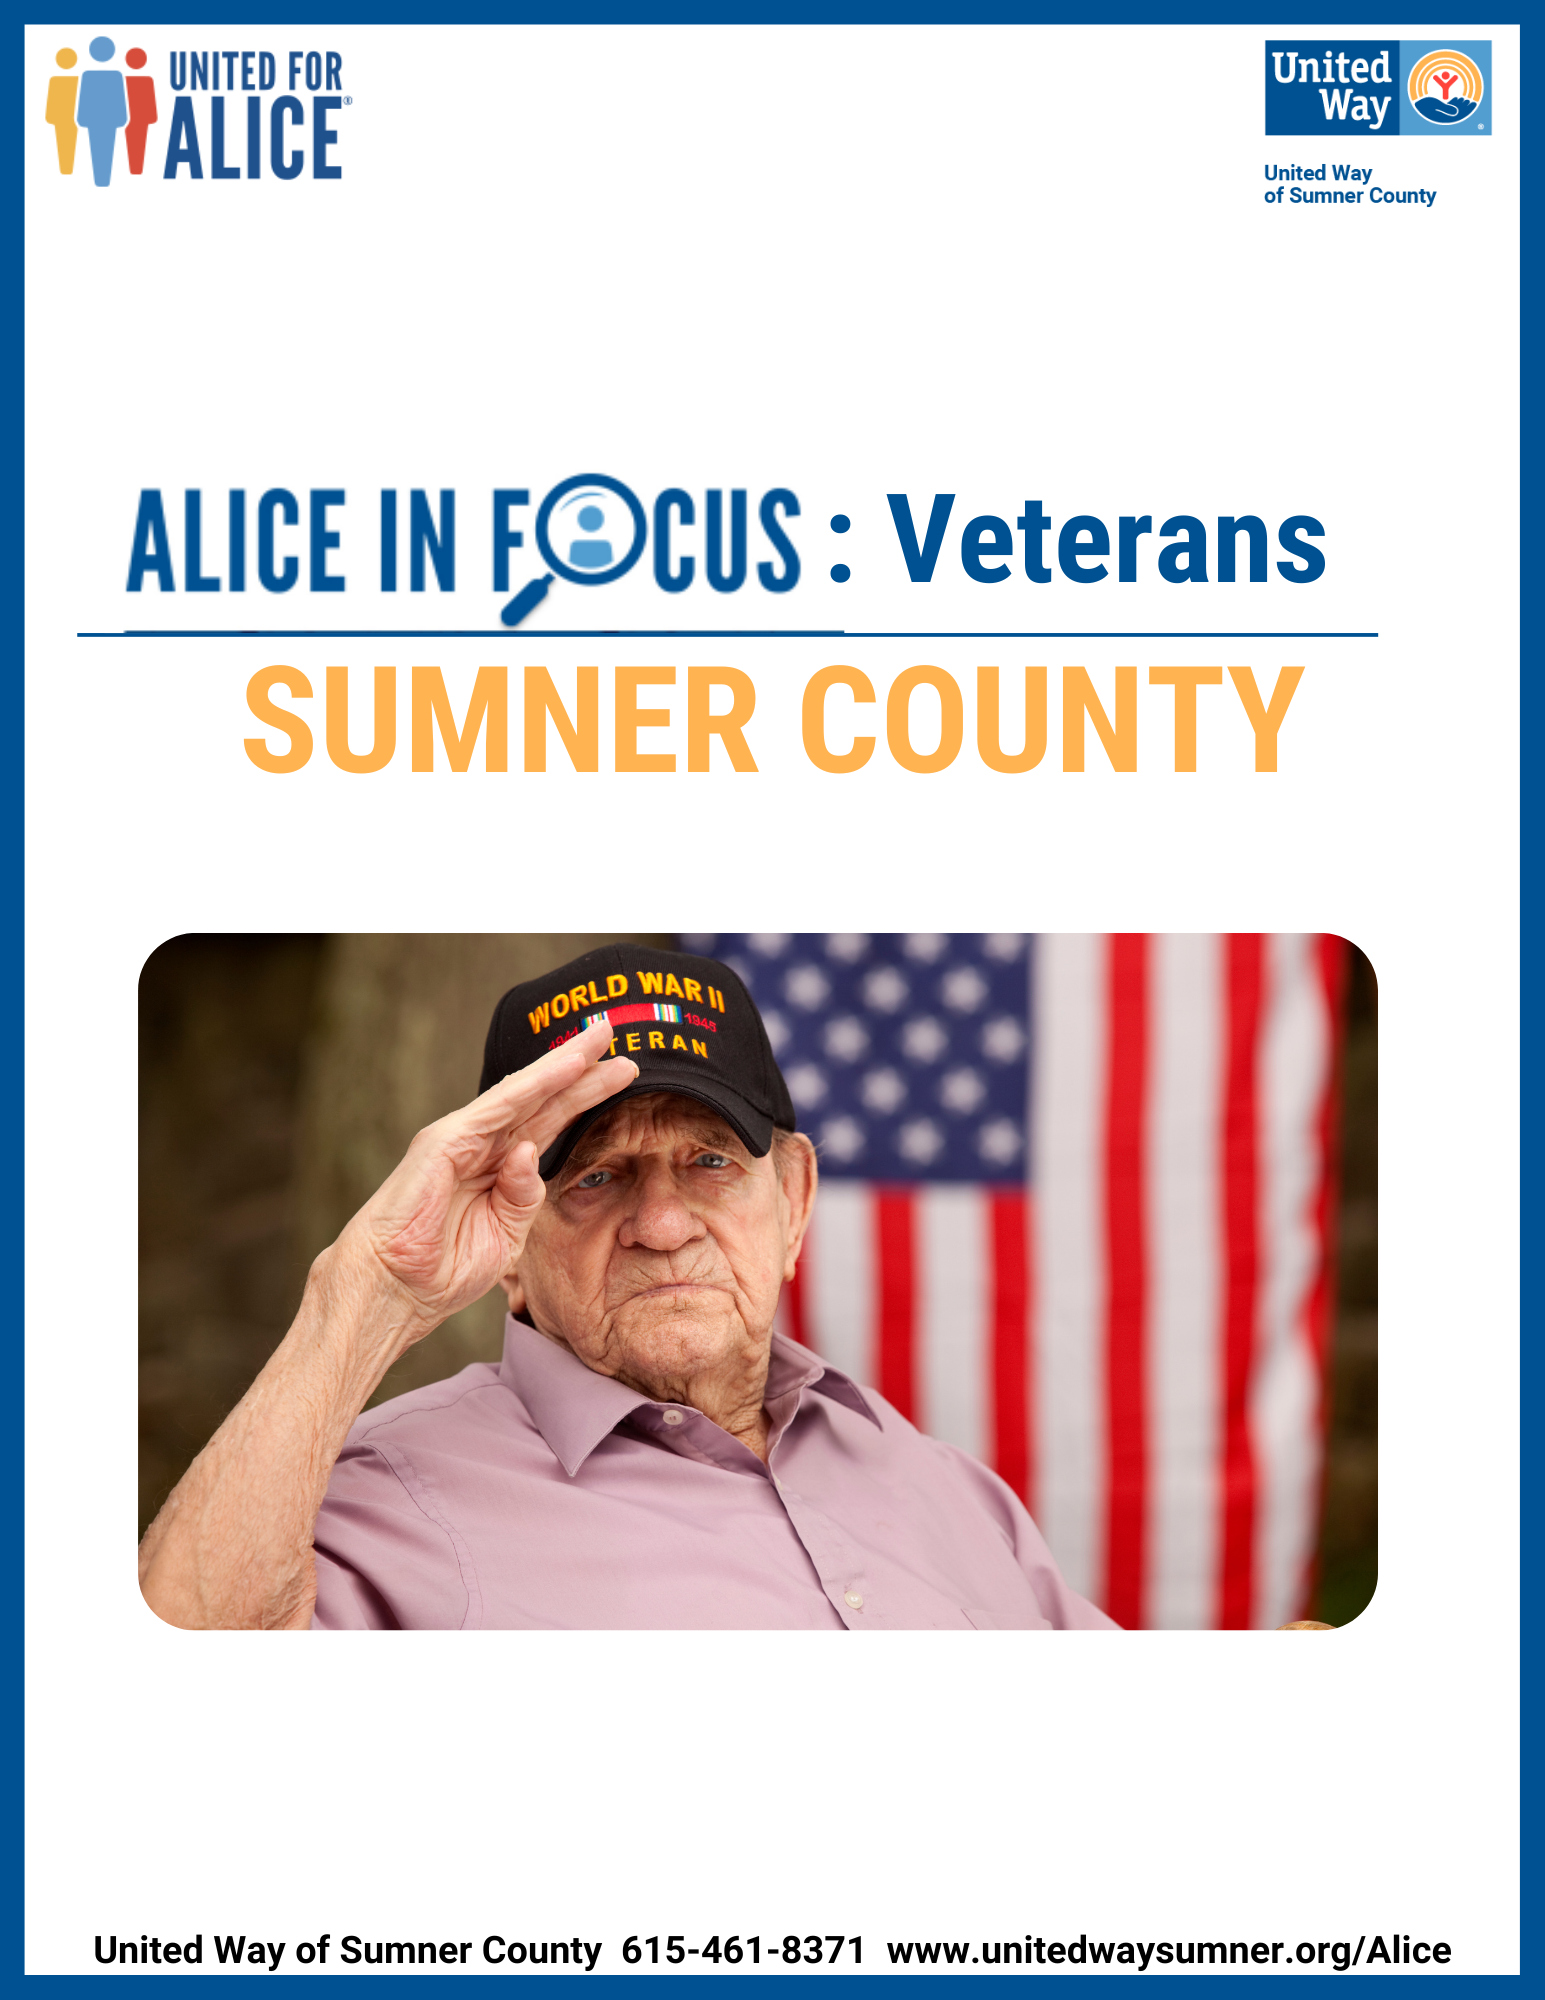 ALICE in Focus Veterans Sumner County Report Cover